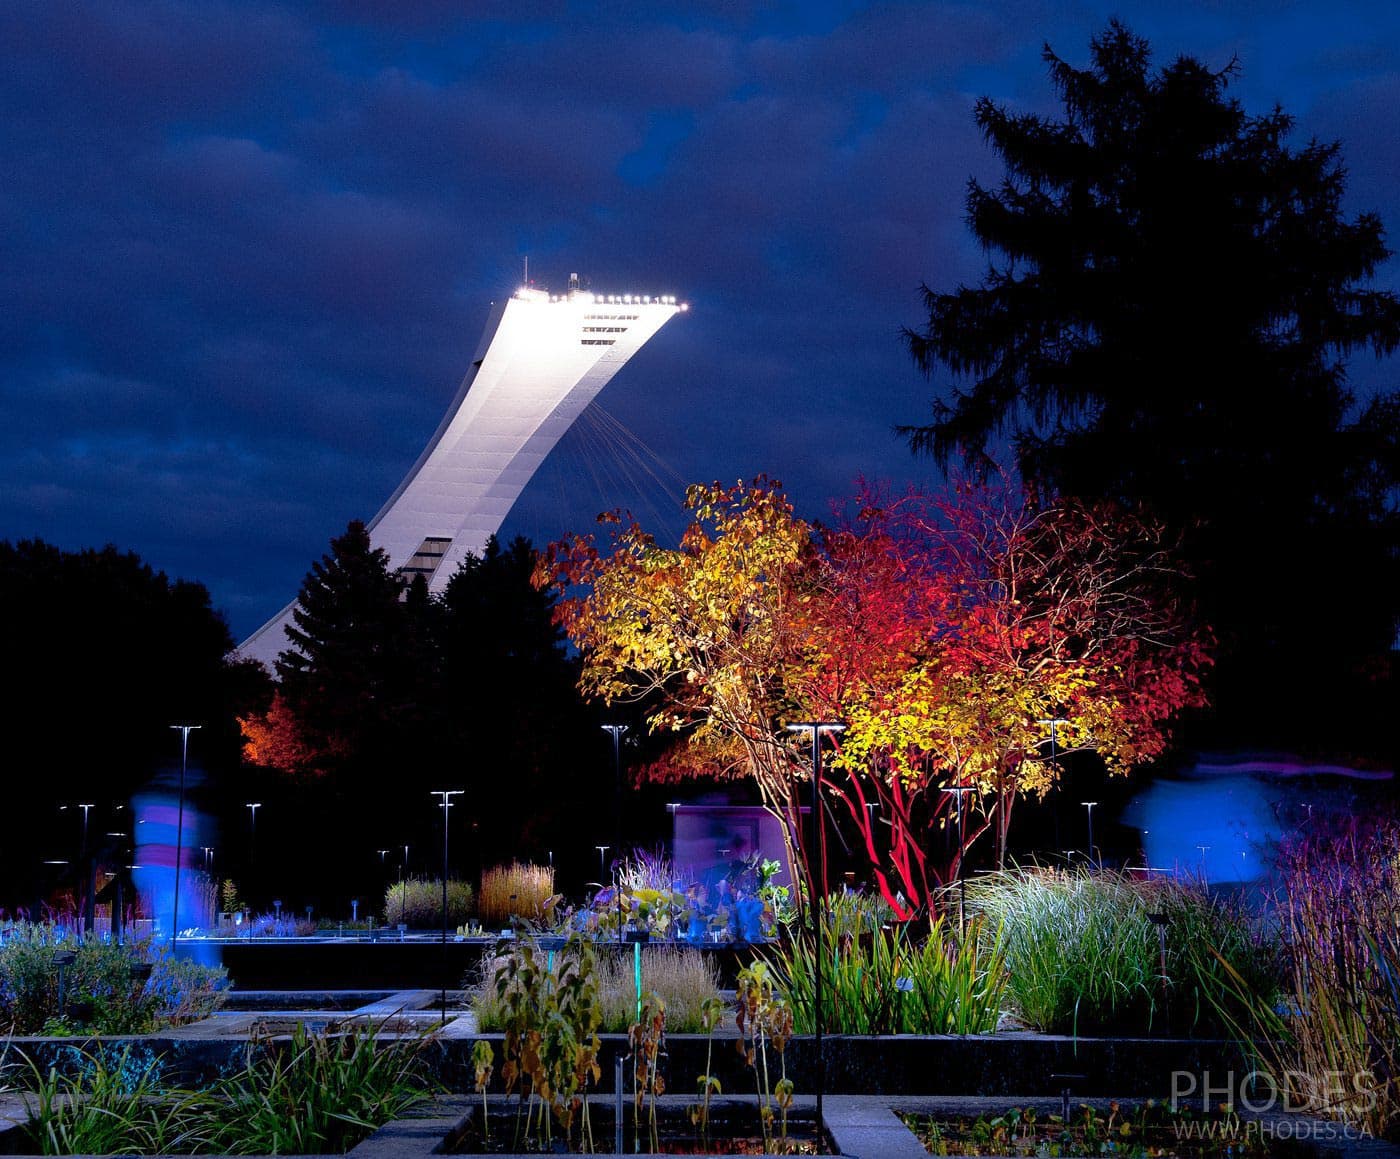 Олимпийский стадион, вид из ботанического сада, Монреаль